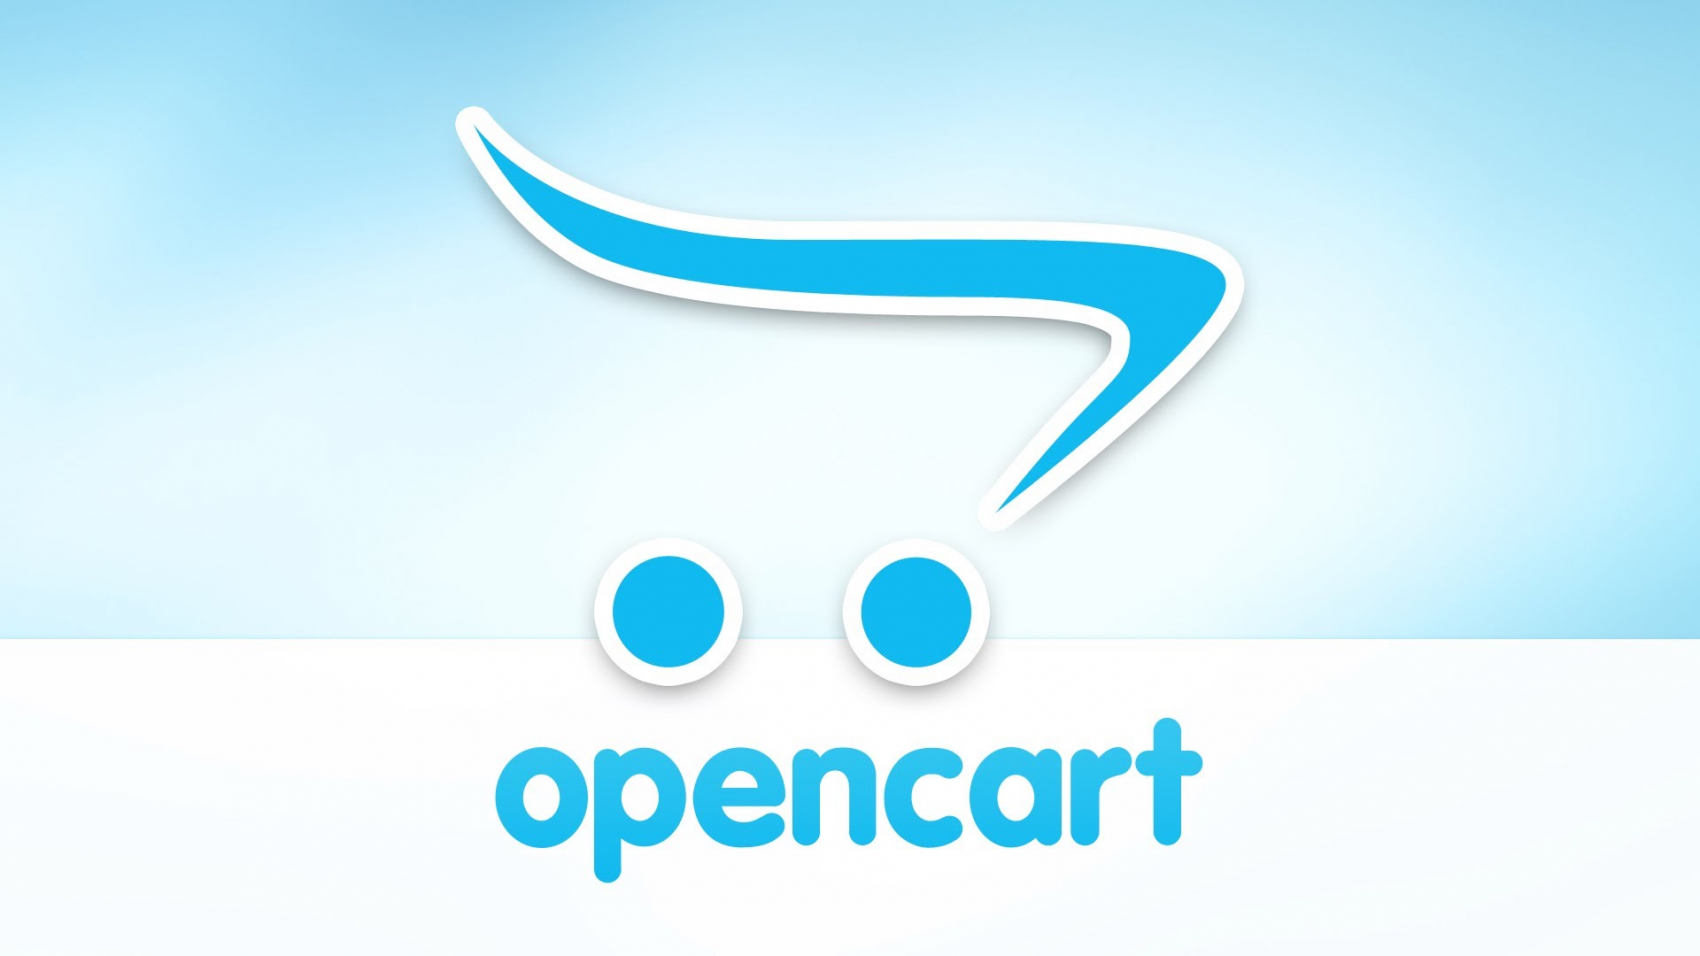 Обзор CMS OpenCart